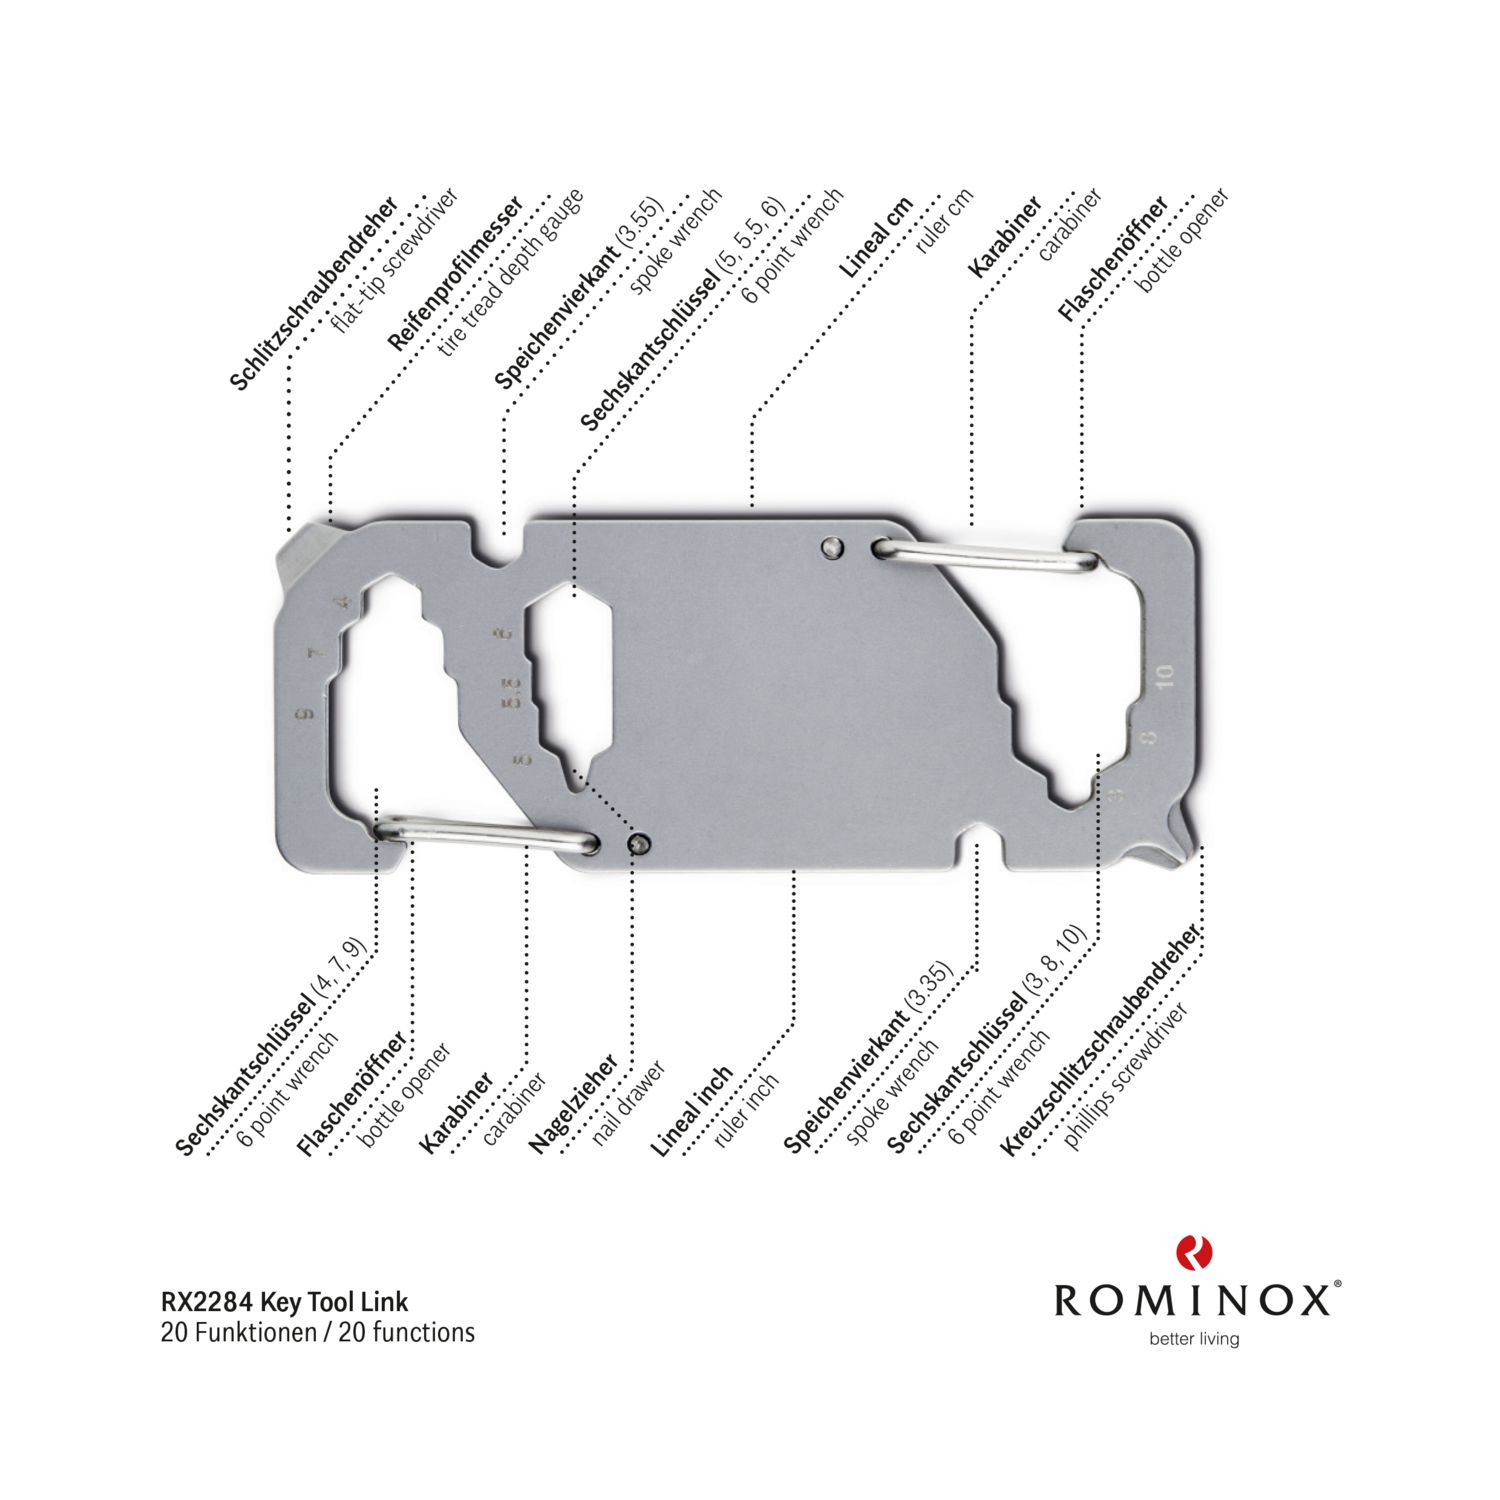 # Rominox Key Tool Link 13 Funktionen ALKO Werbeartikel Schlüsselanhänger 